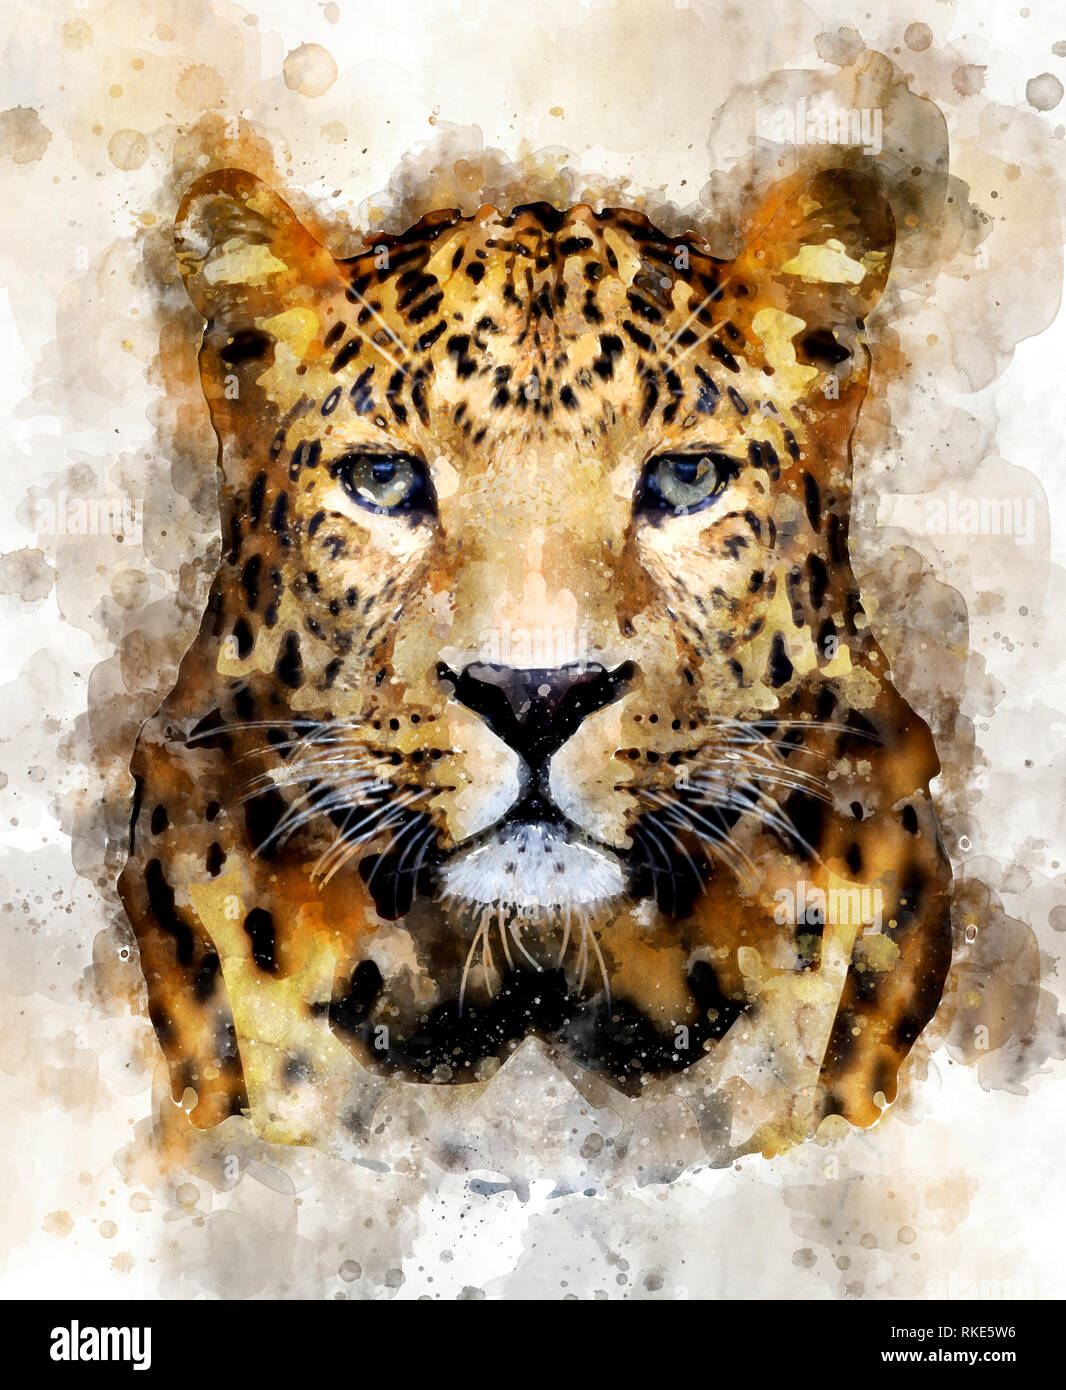 https://c8.alamy.com/comp/RKE5W6/watercolor-illustration-leopard-portrait-beautiful-wildlife-world-RKE5W6.jpg